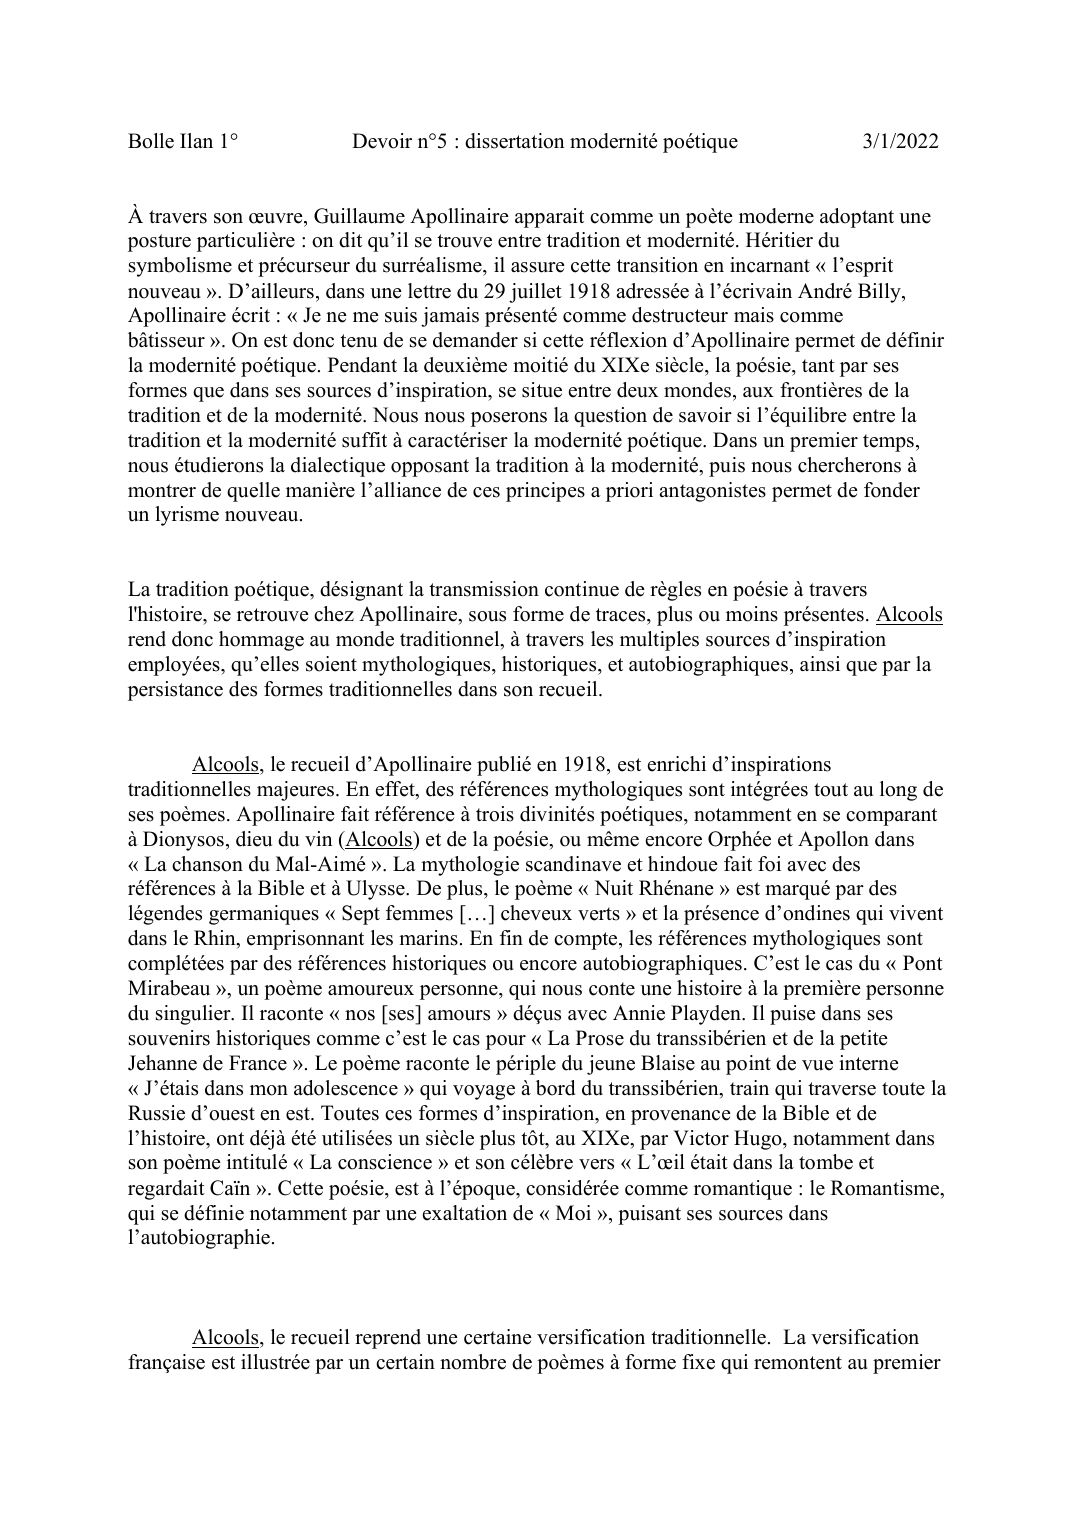 Prévisualisation du document Dissertation modernité poétique Apollinaire